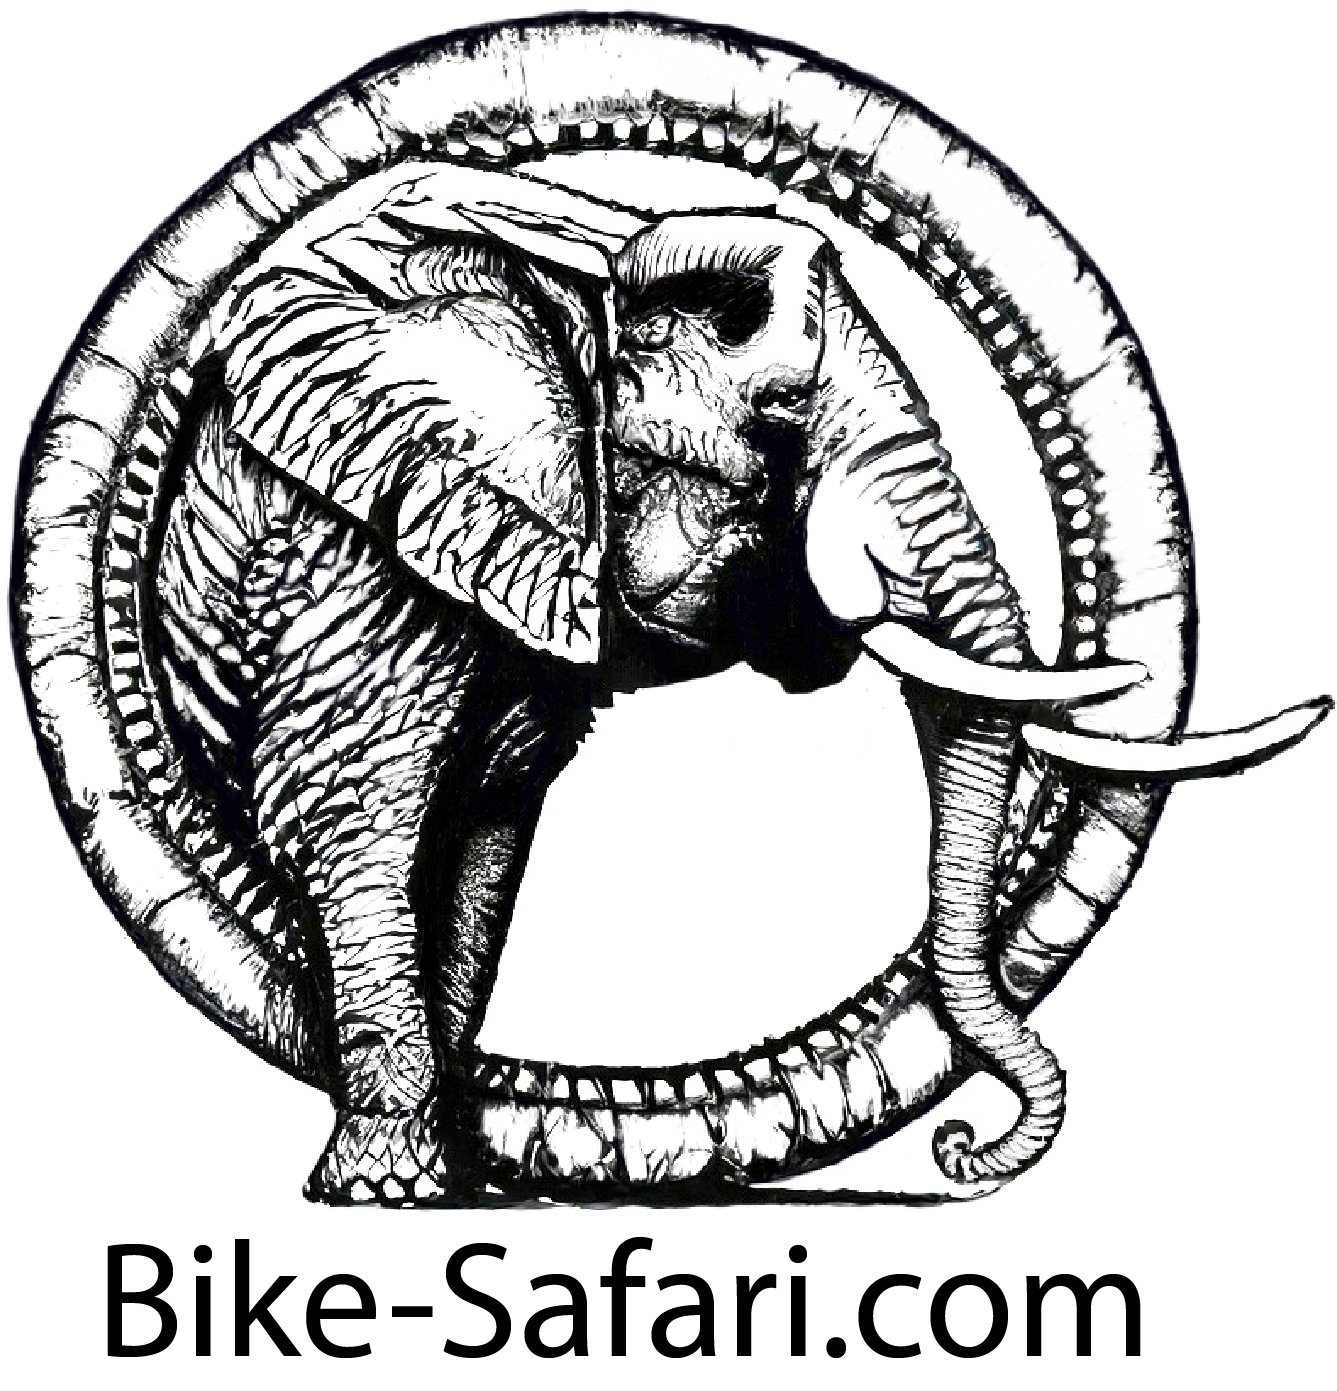 Bike-Safari.com